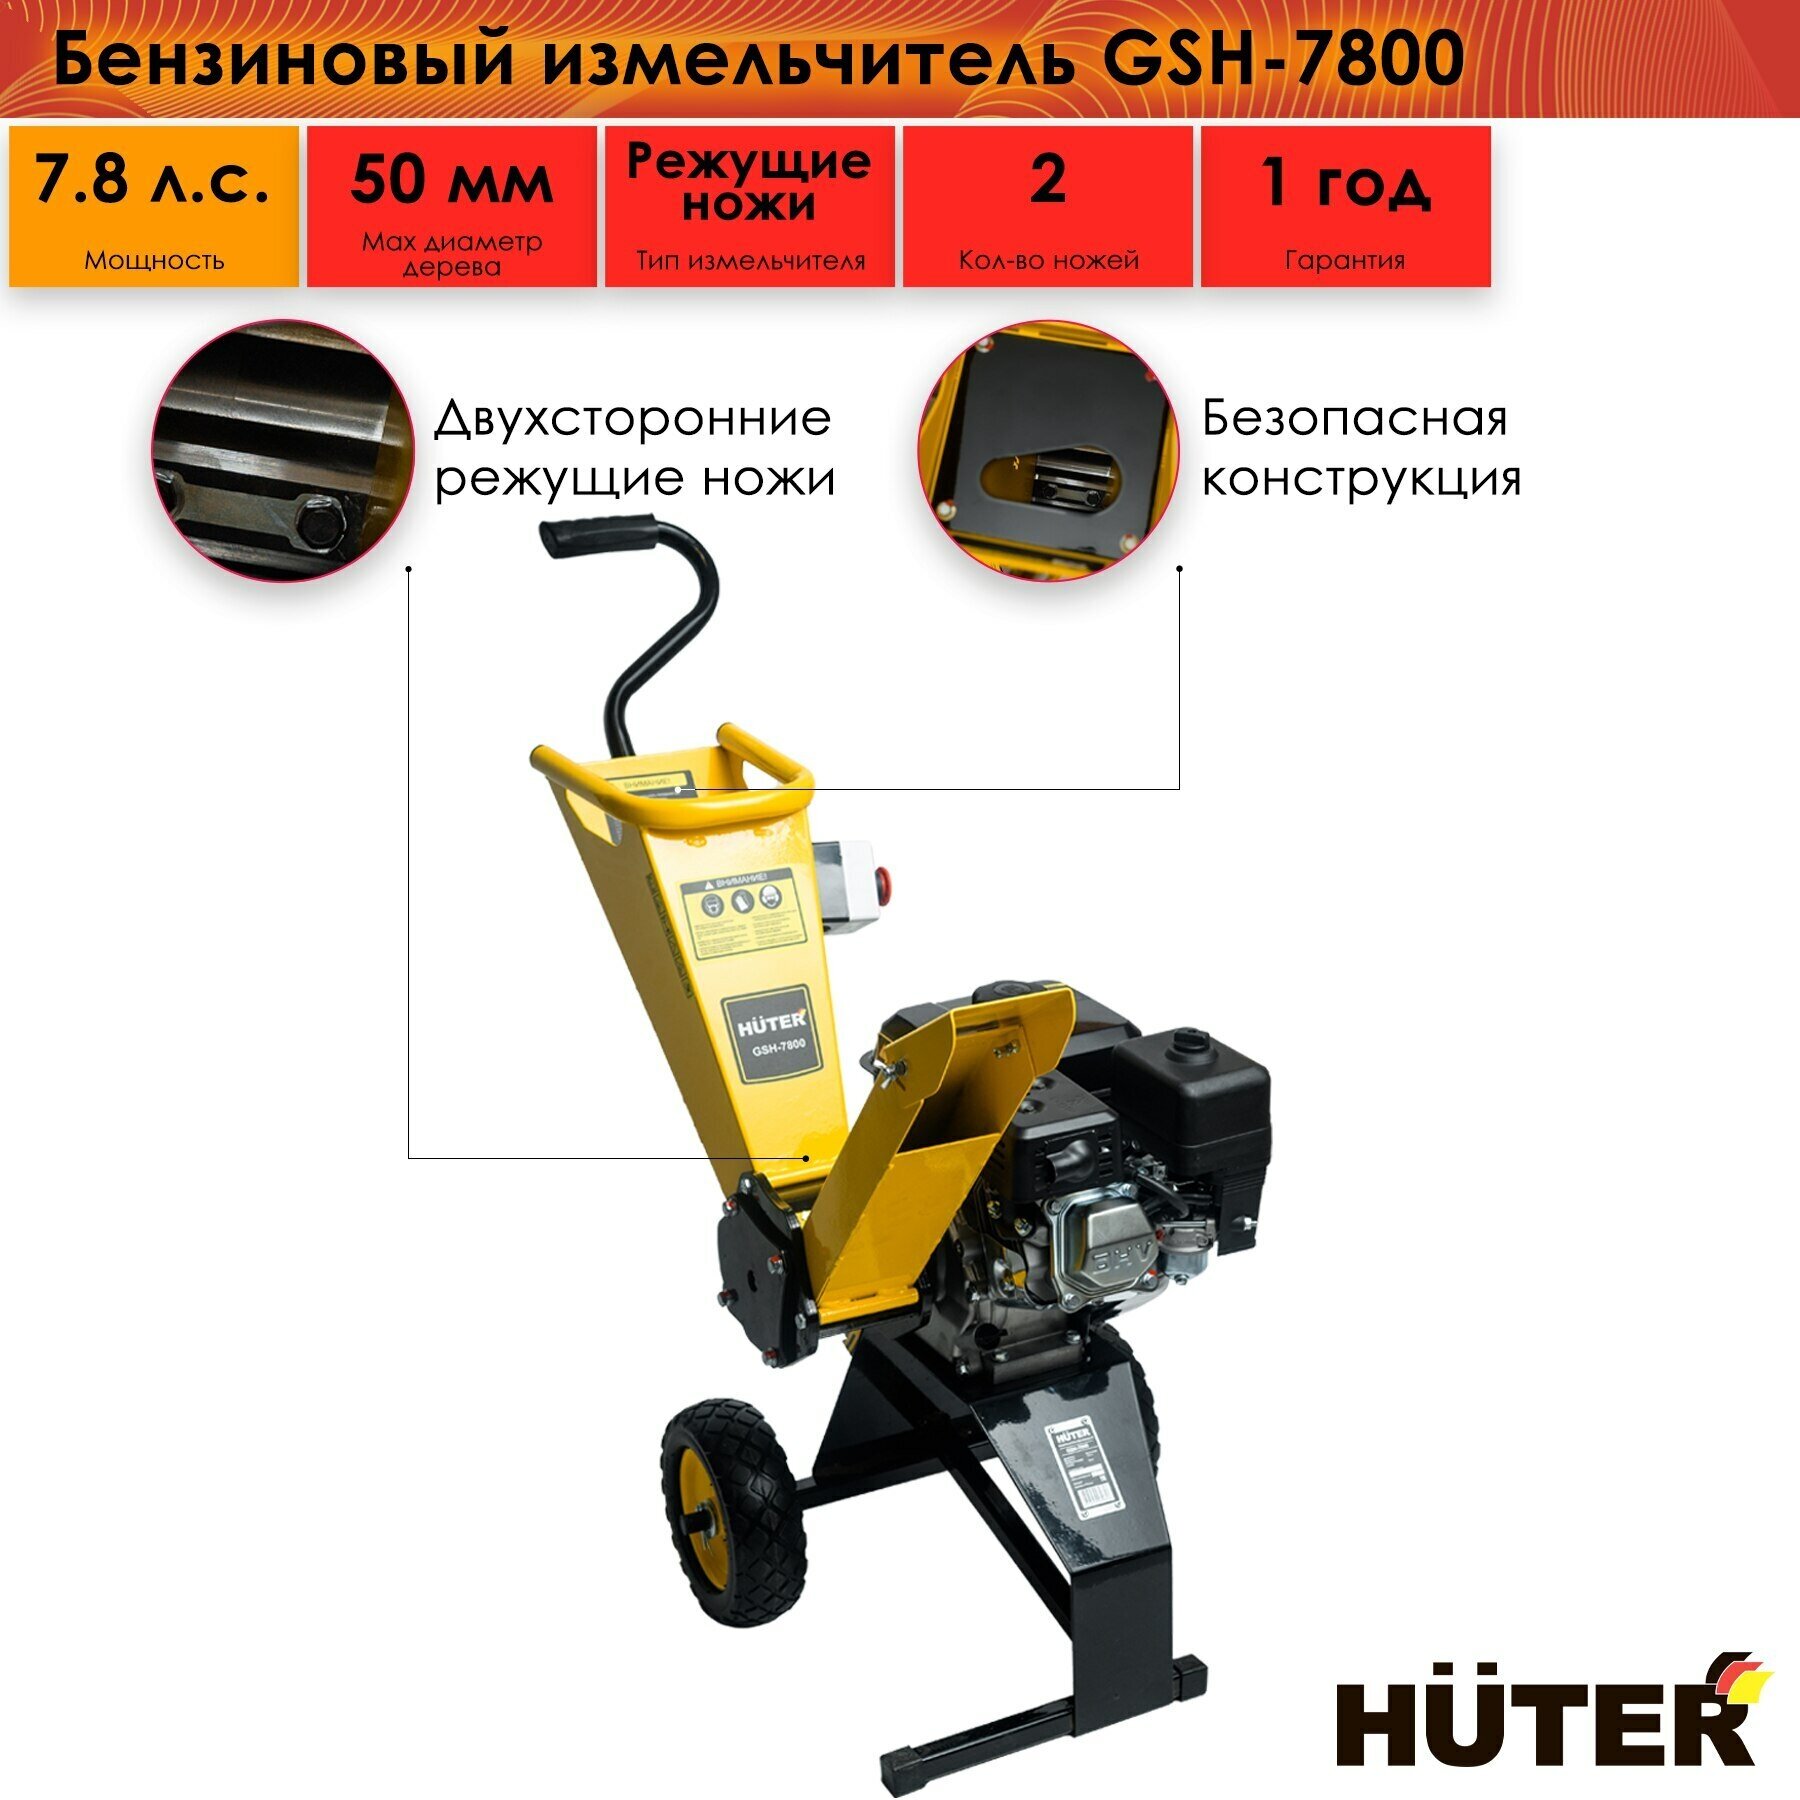 Бензиновый измельчитель Huter GSH-7800, 7.8 л. с, 50 мм, режущие ножи